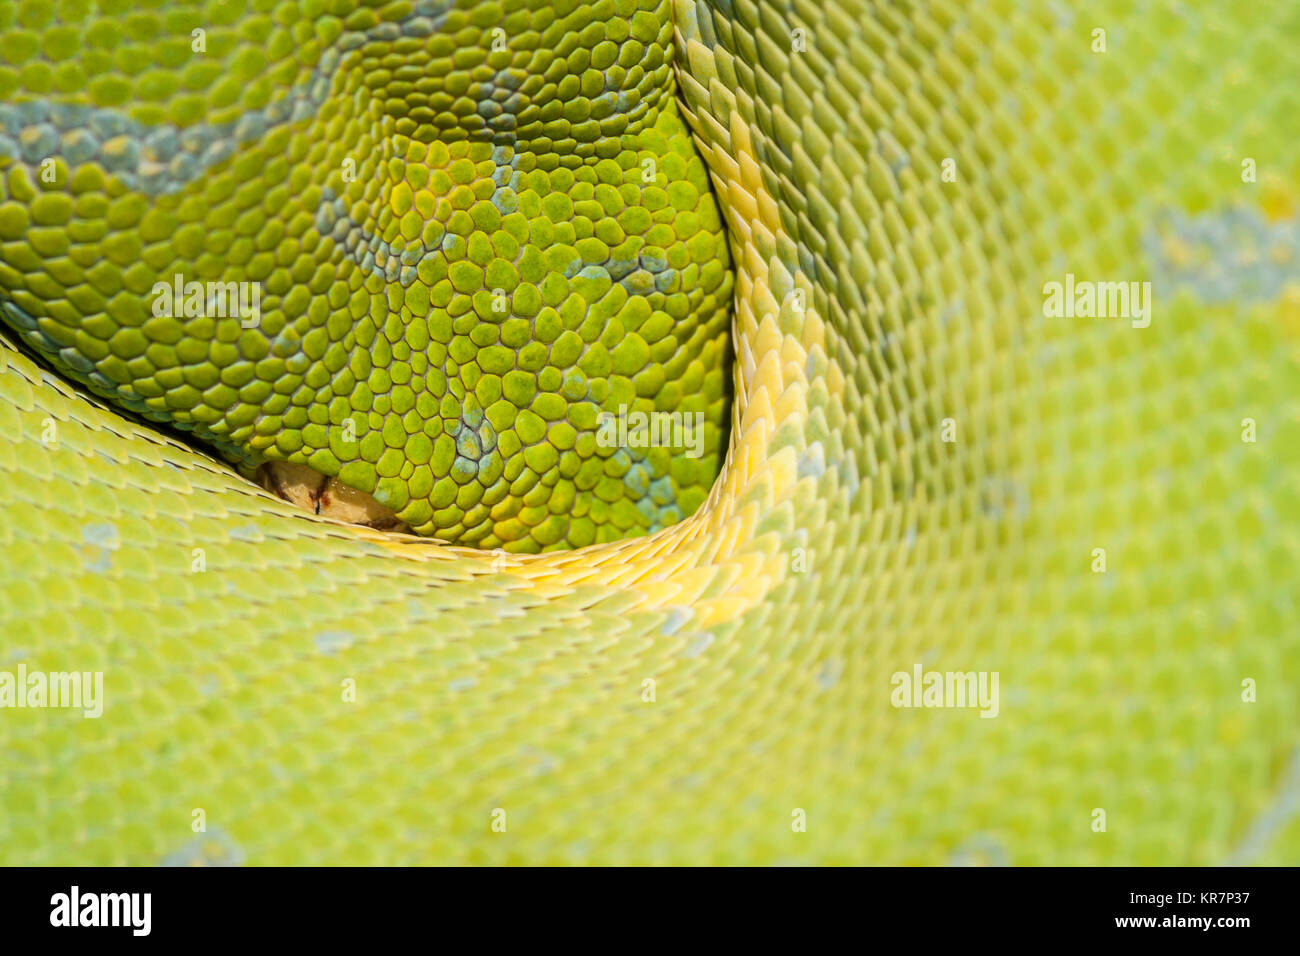 Green Tree Python (Morelia viridis) appesi sul ramo in attesa di prede. Sembra essere peaking dalla protezione delle sue spire. Foto Stock